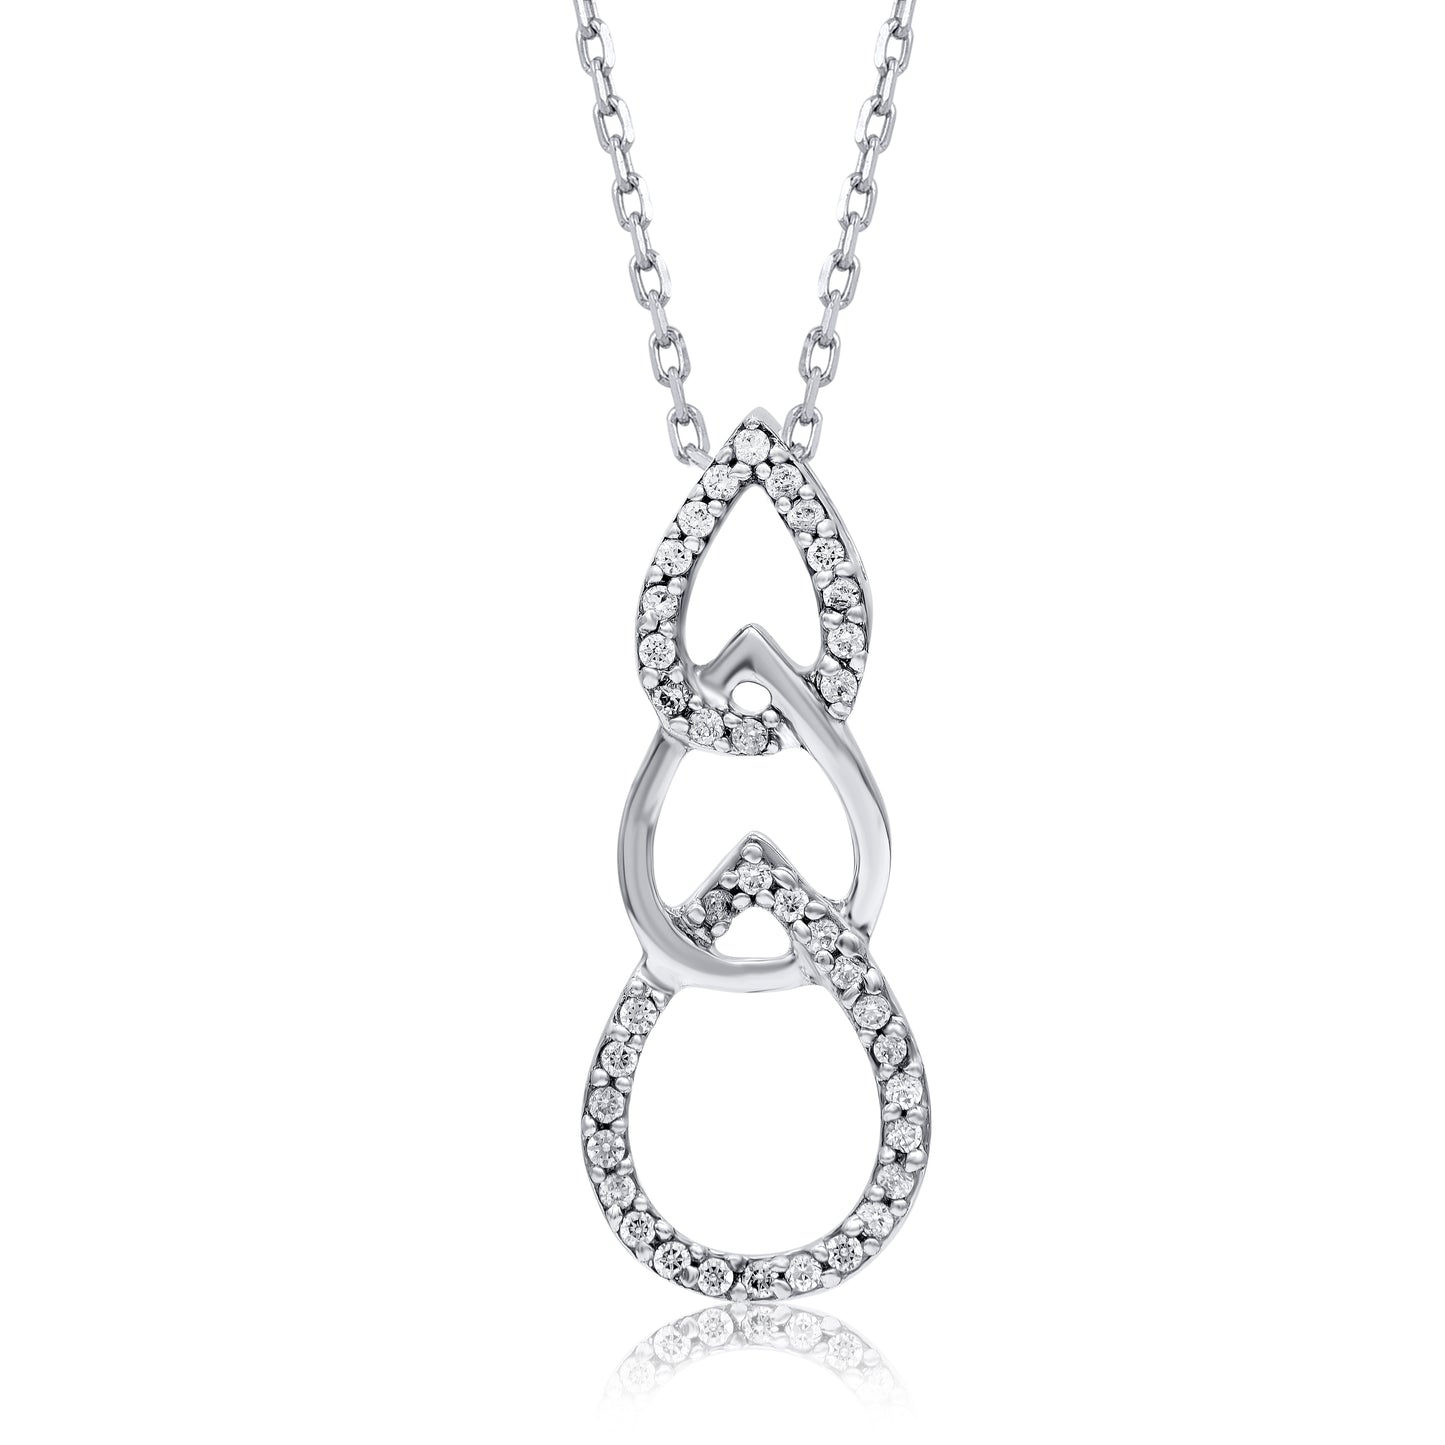 Intertwined Triple Tear Drop Pendant Necklace in 925 Sterling Silver